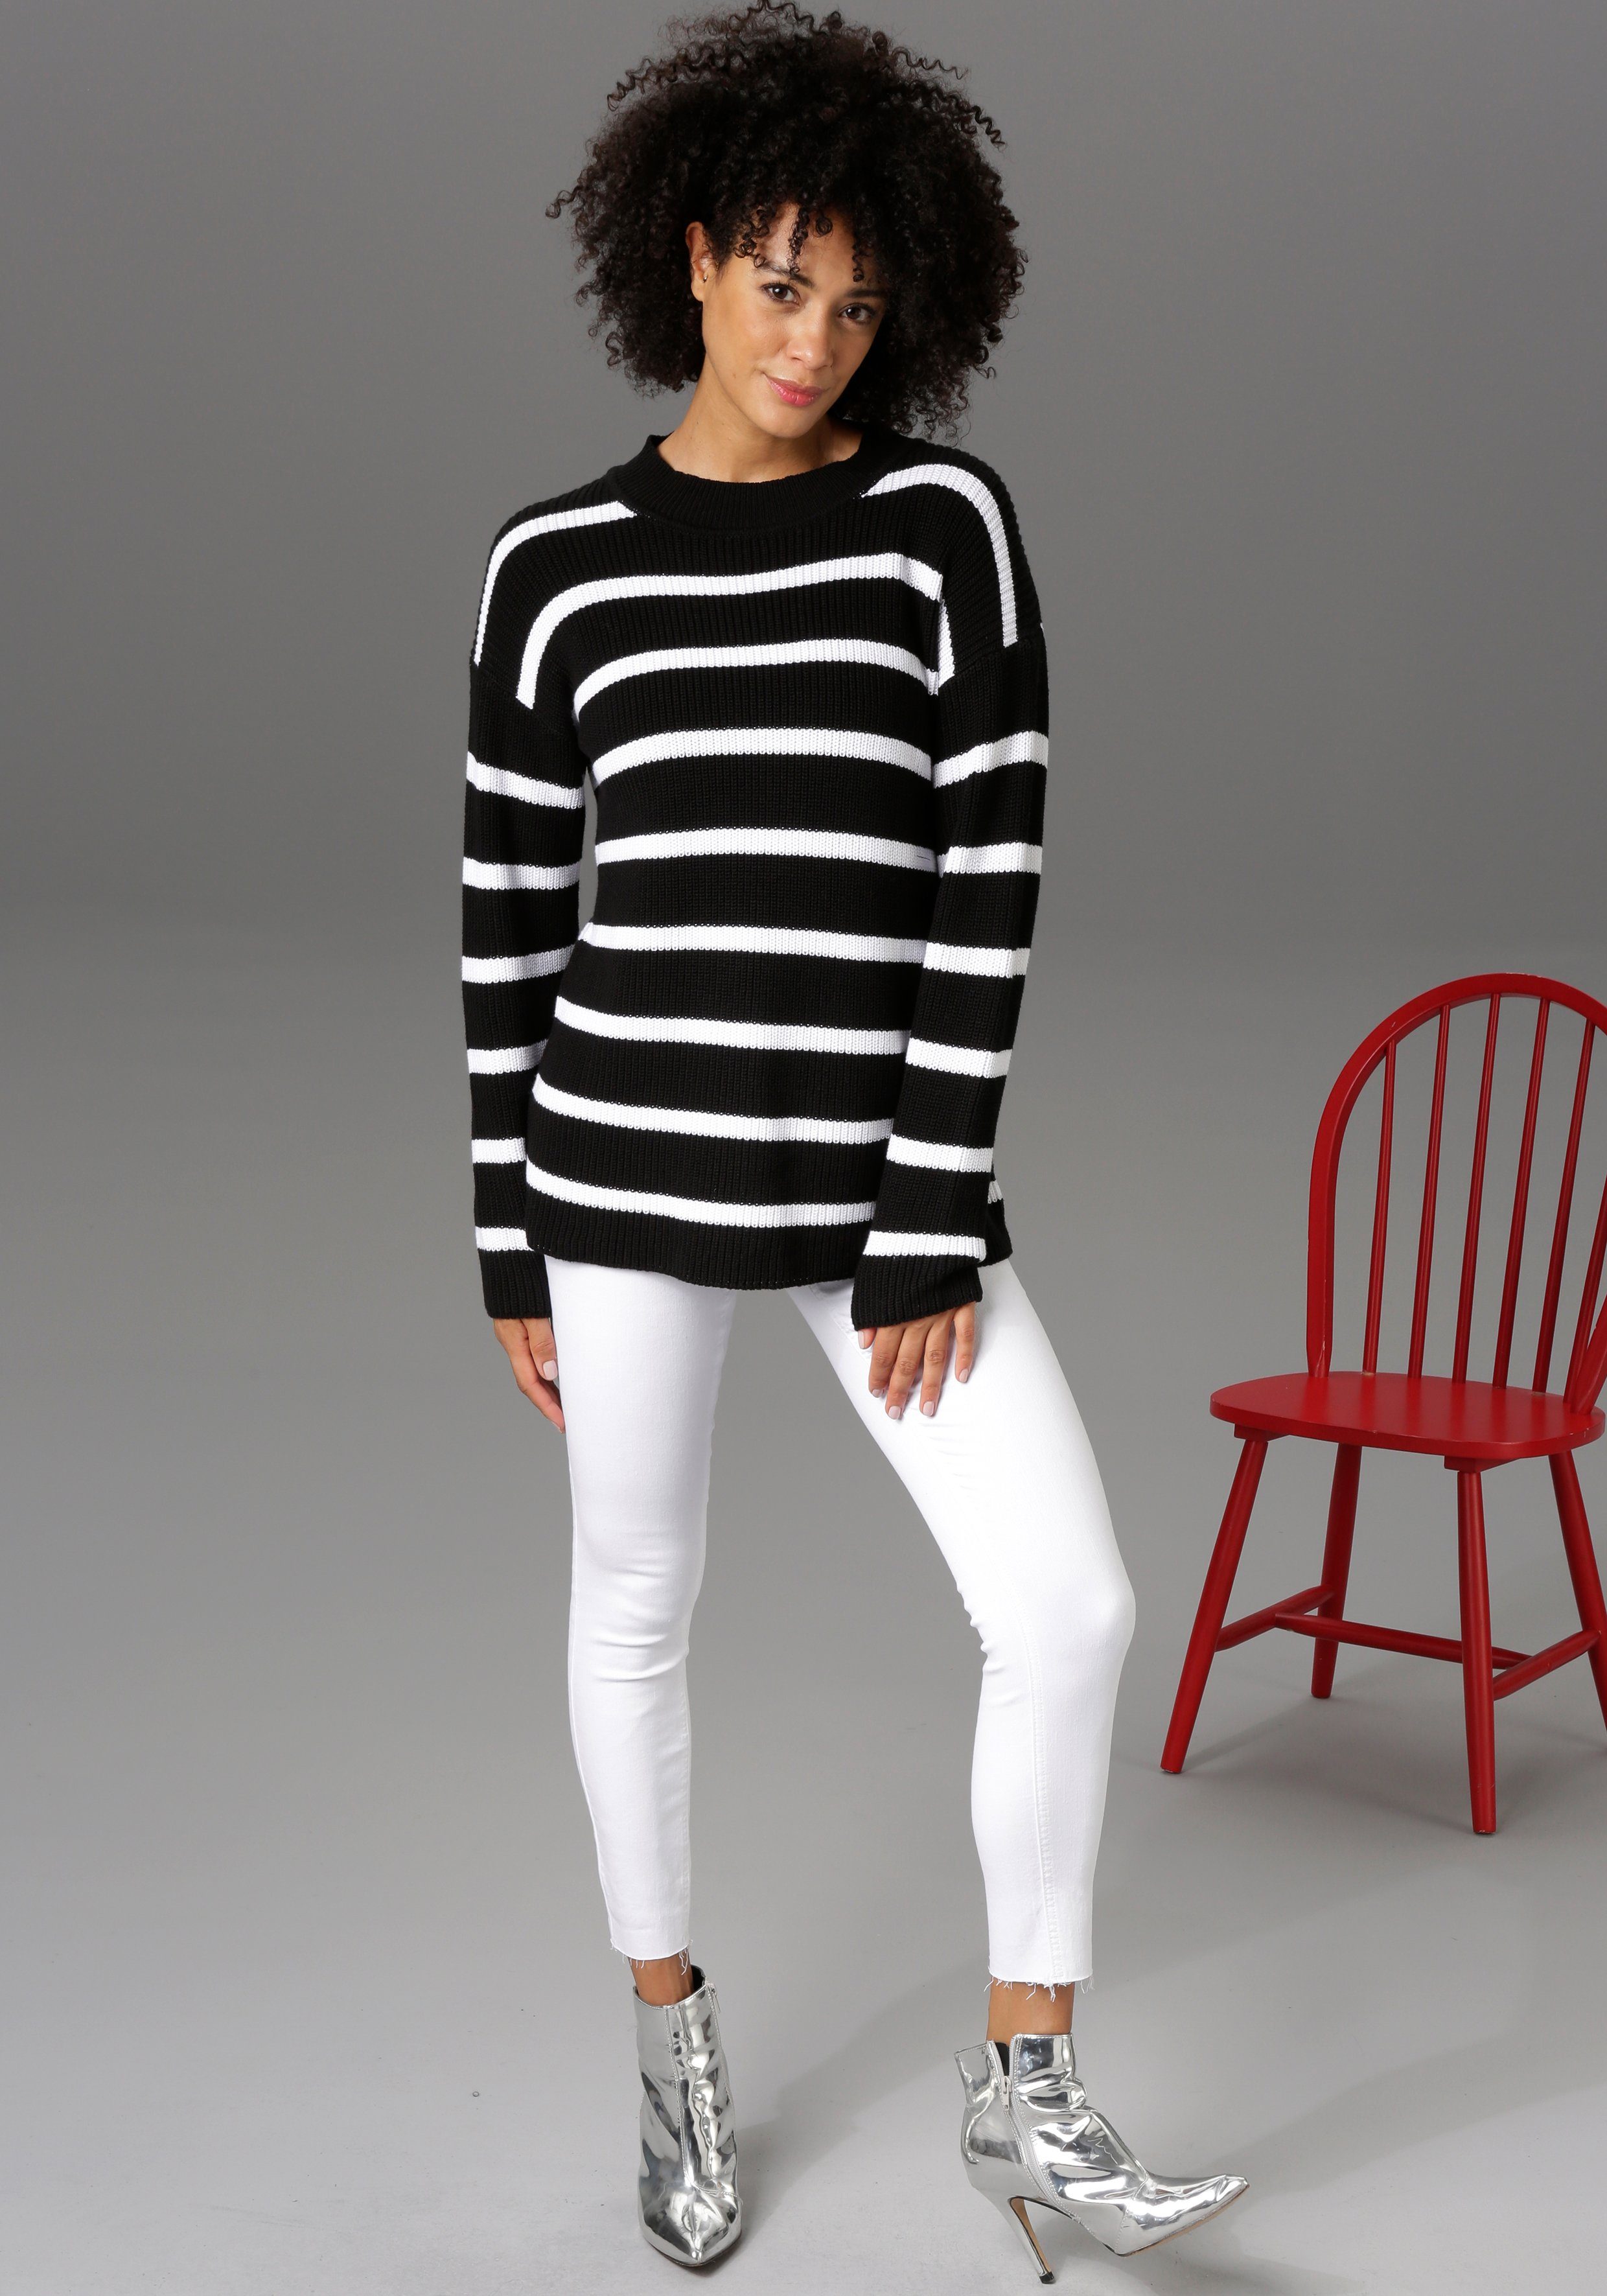 CASUAL - Aniston mit regular white Skinny-fit-Jeans Beinabschluss waist ausgefransten